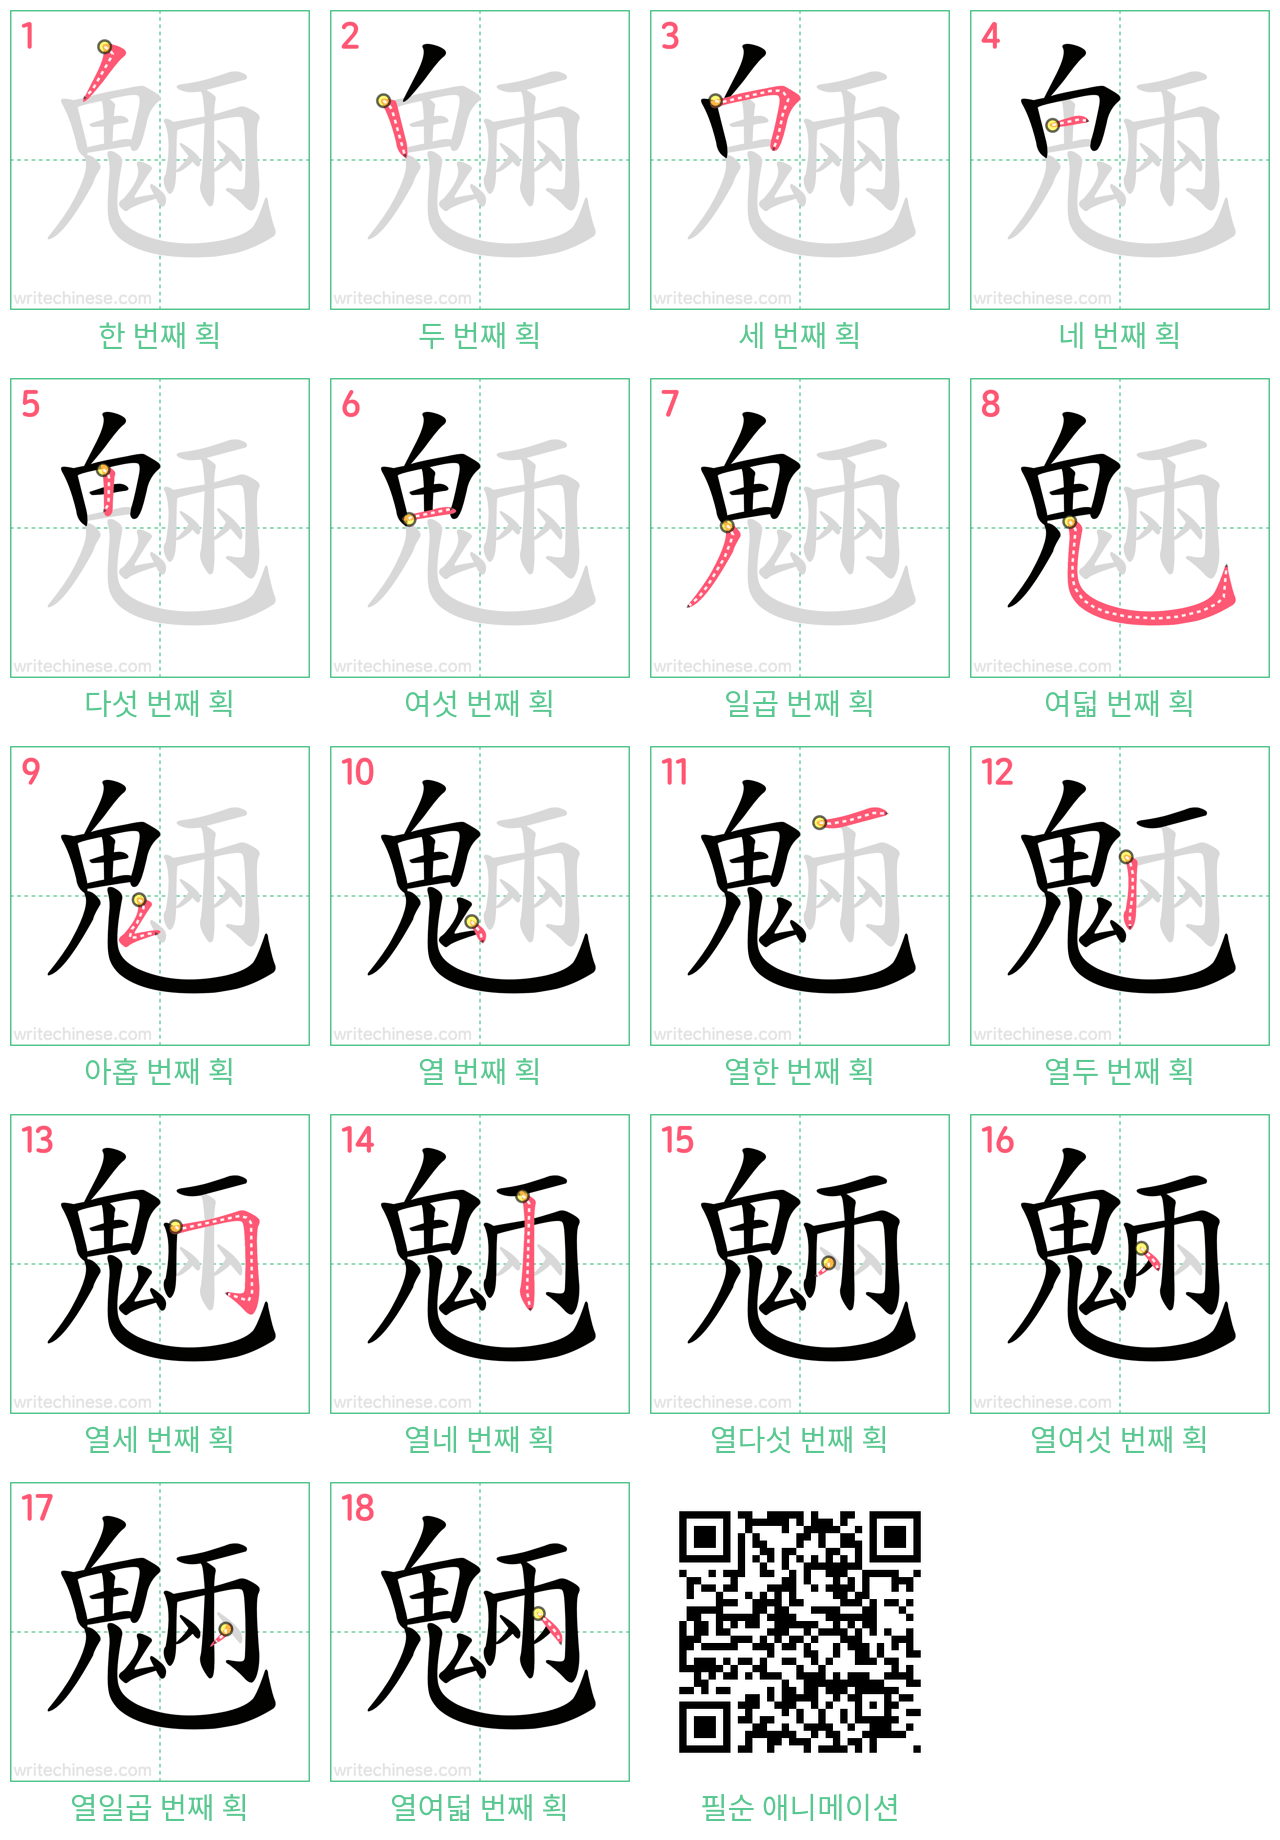 魎 step-by-step stroke order diagrams